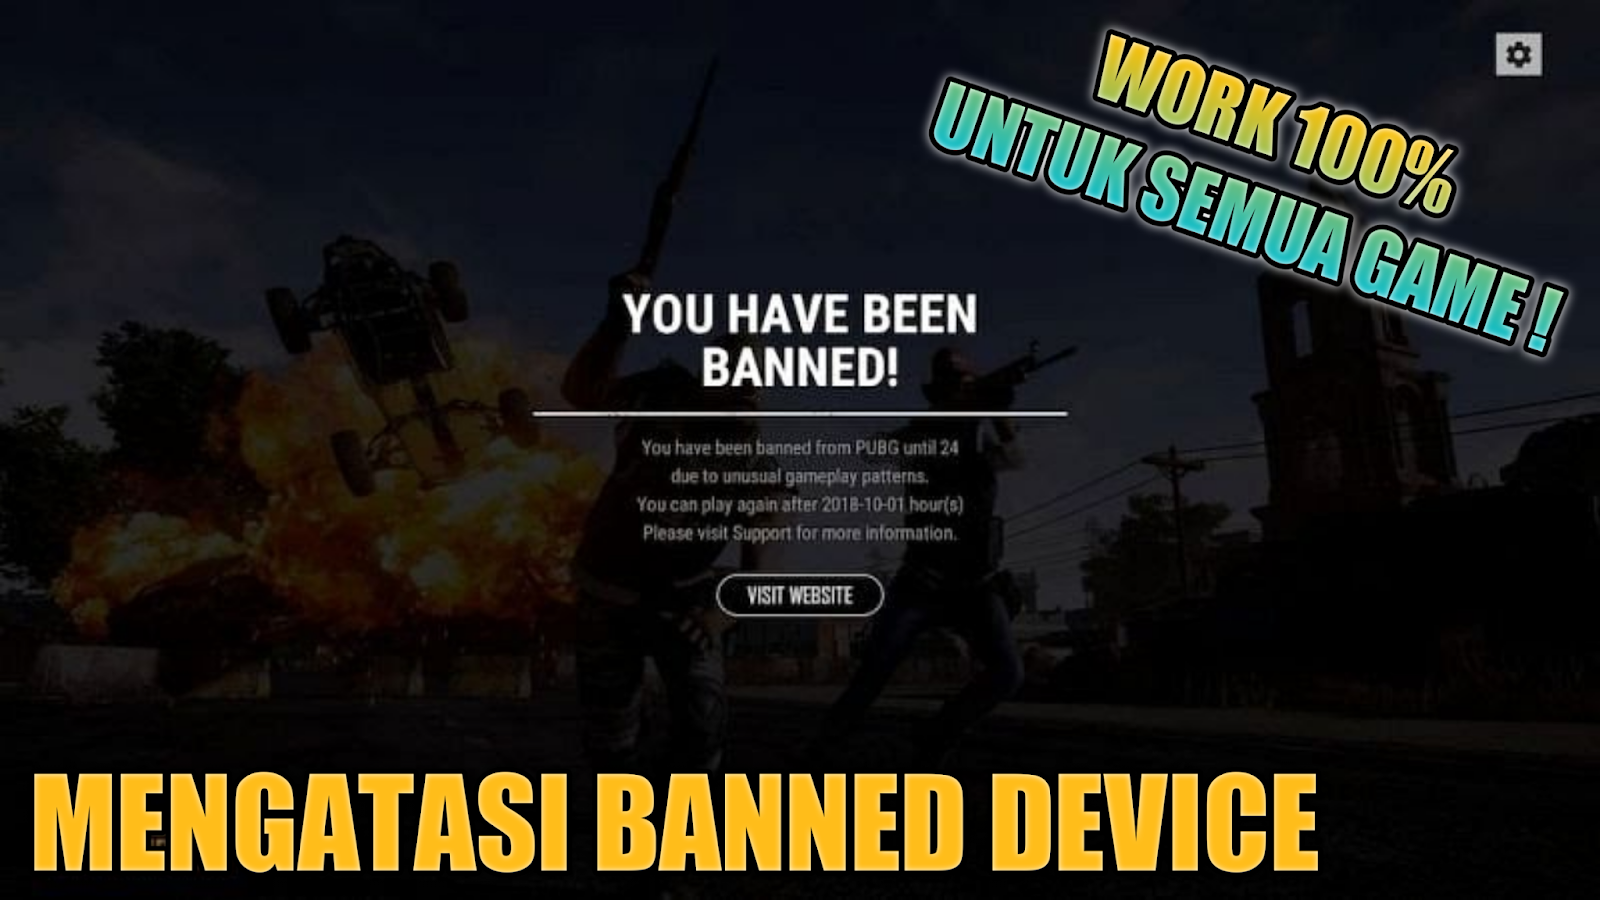 mengatasi-banned-device-semua-game